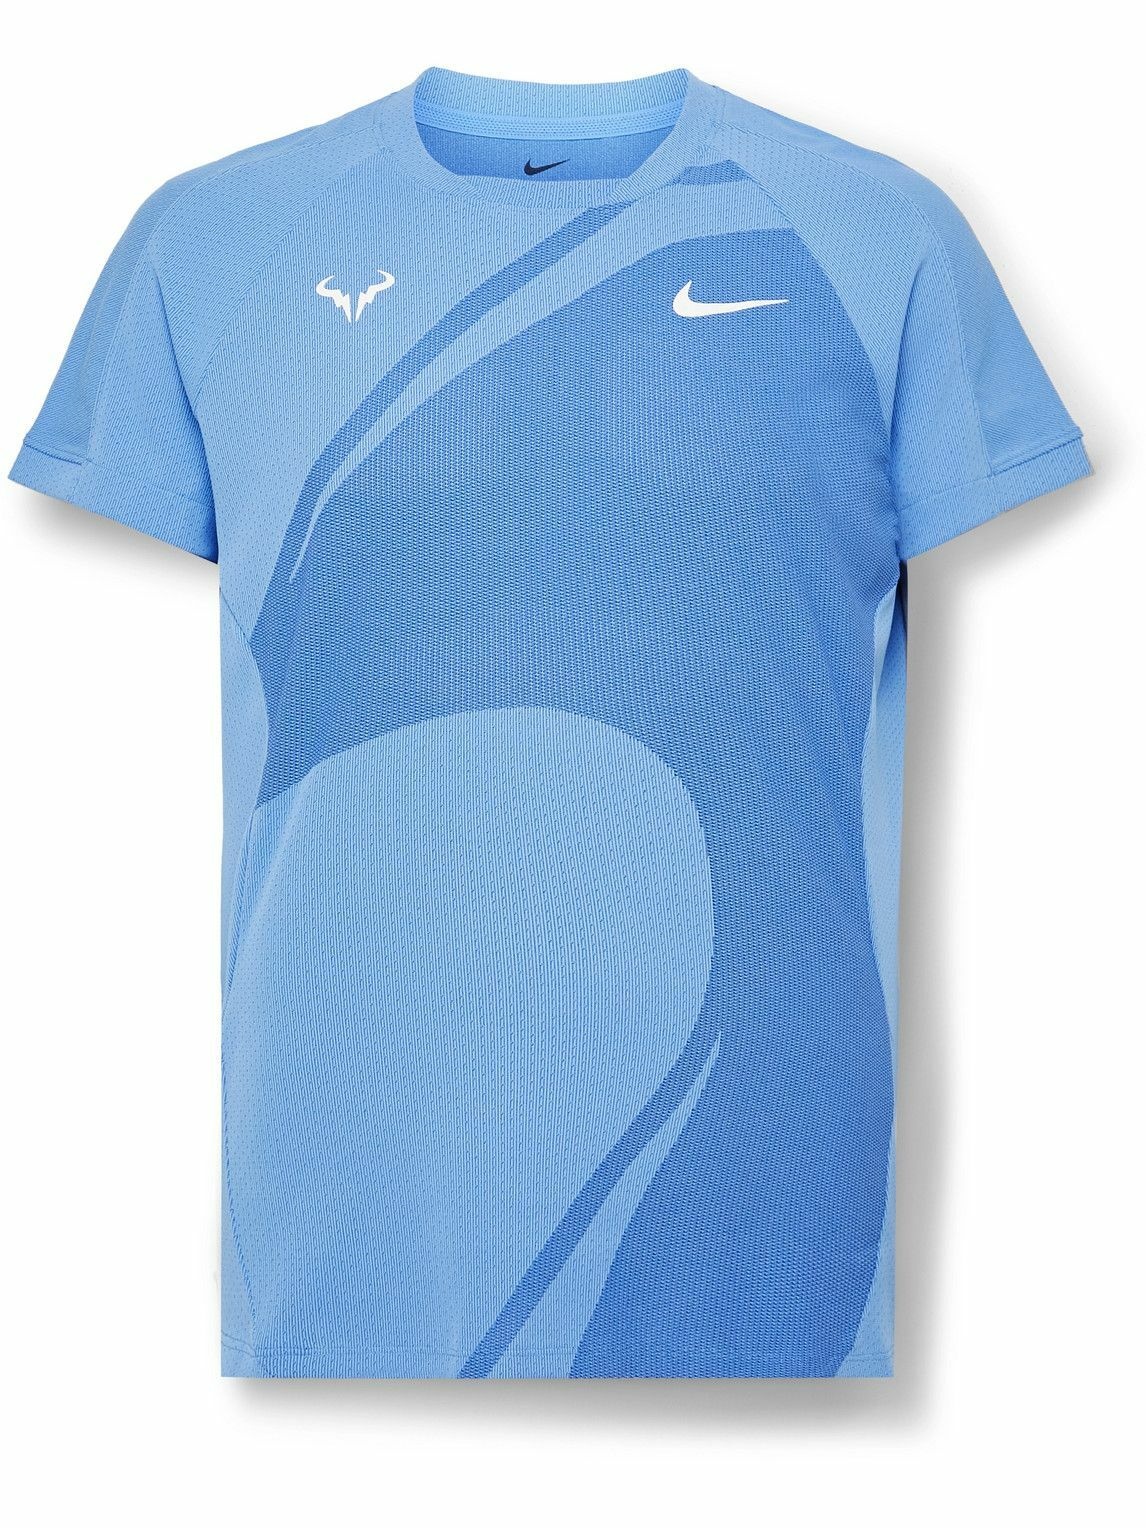 Nike Tennis NikeCourt Rafa SlimFit DriFIT ADV TShirt Blue Nike